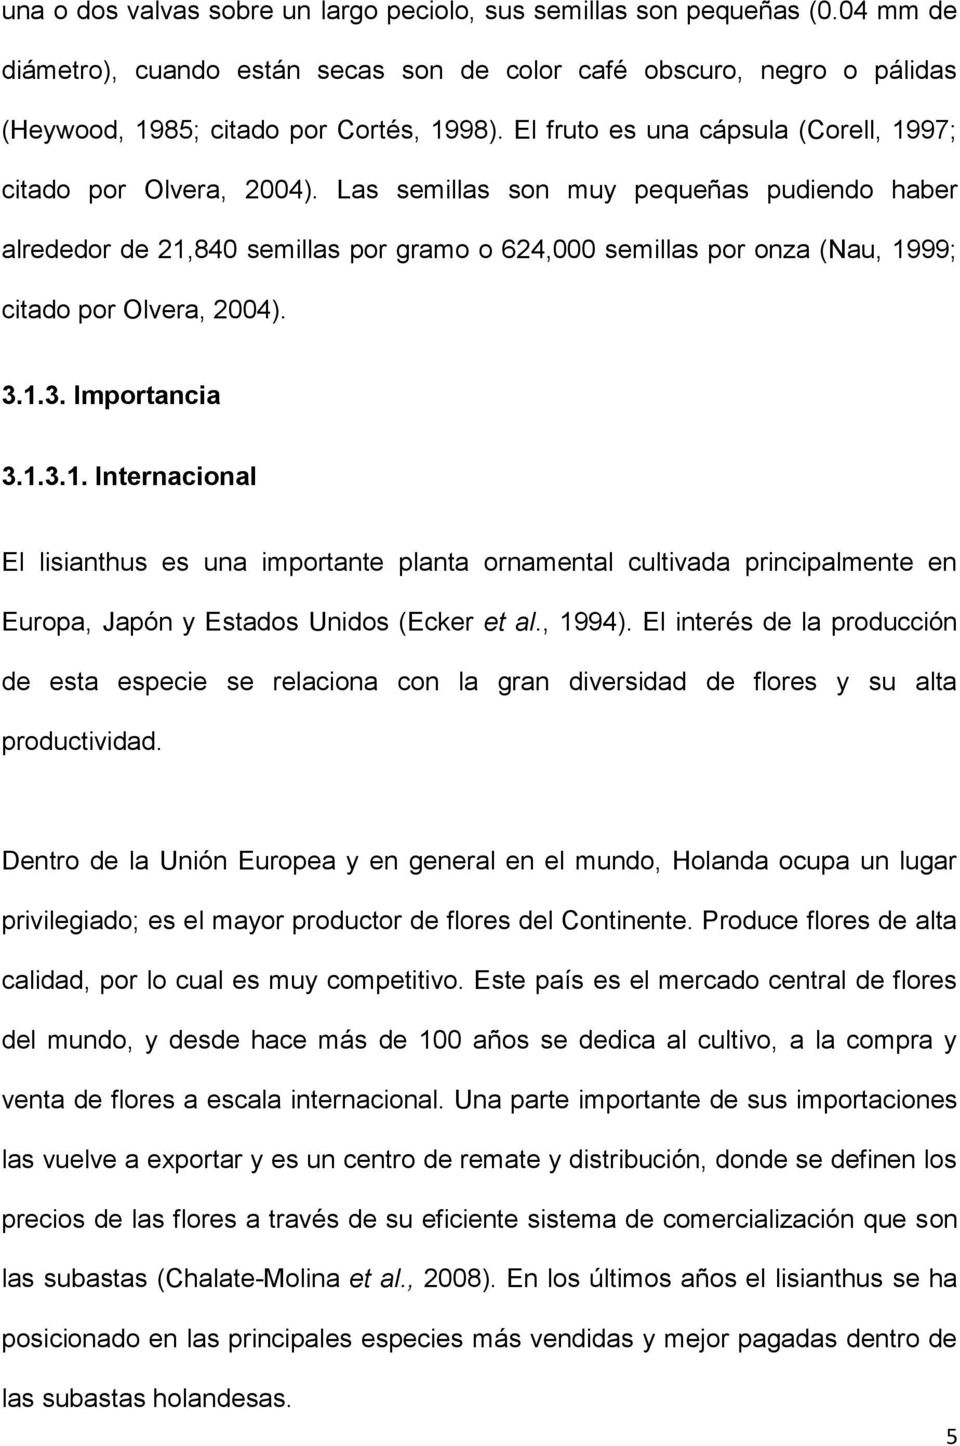 3.1.3. Importnci 3.1.3.1. Interncionl El lisinthus es un importnte plnt ornmentl cultivd principlmente en Europ, Jpón y Estdos Unidos (Ecker et l., 1994).